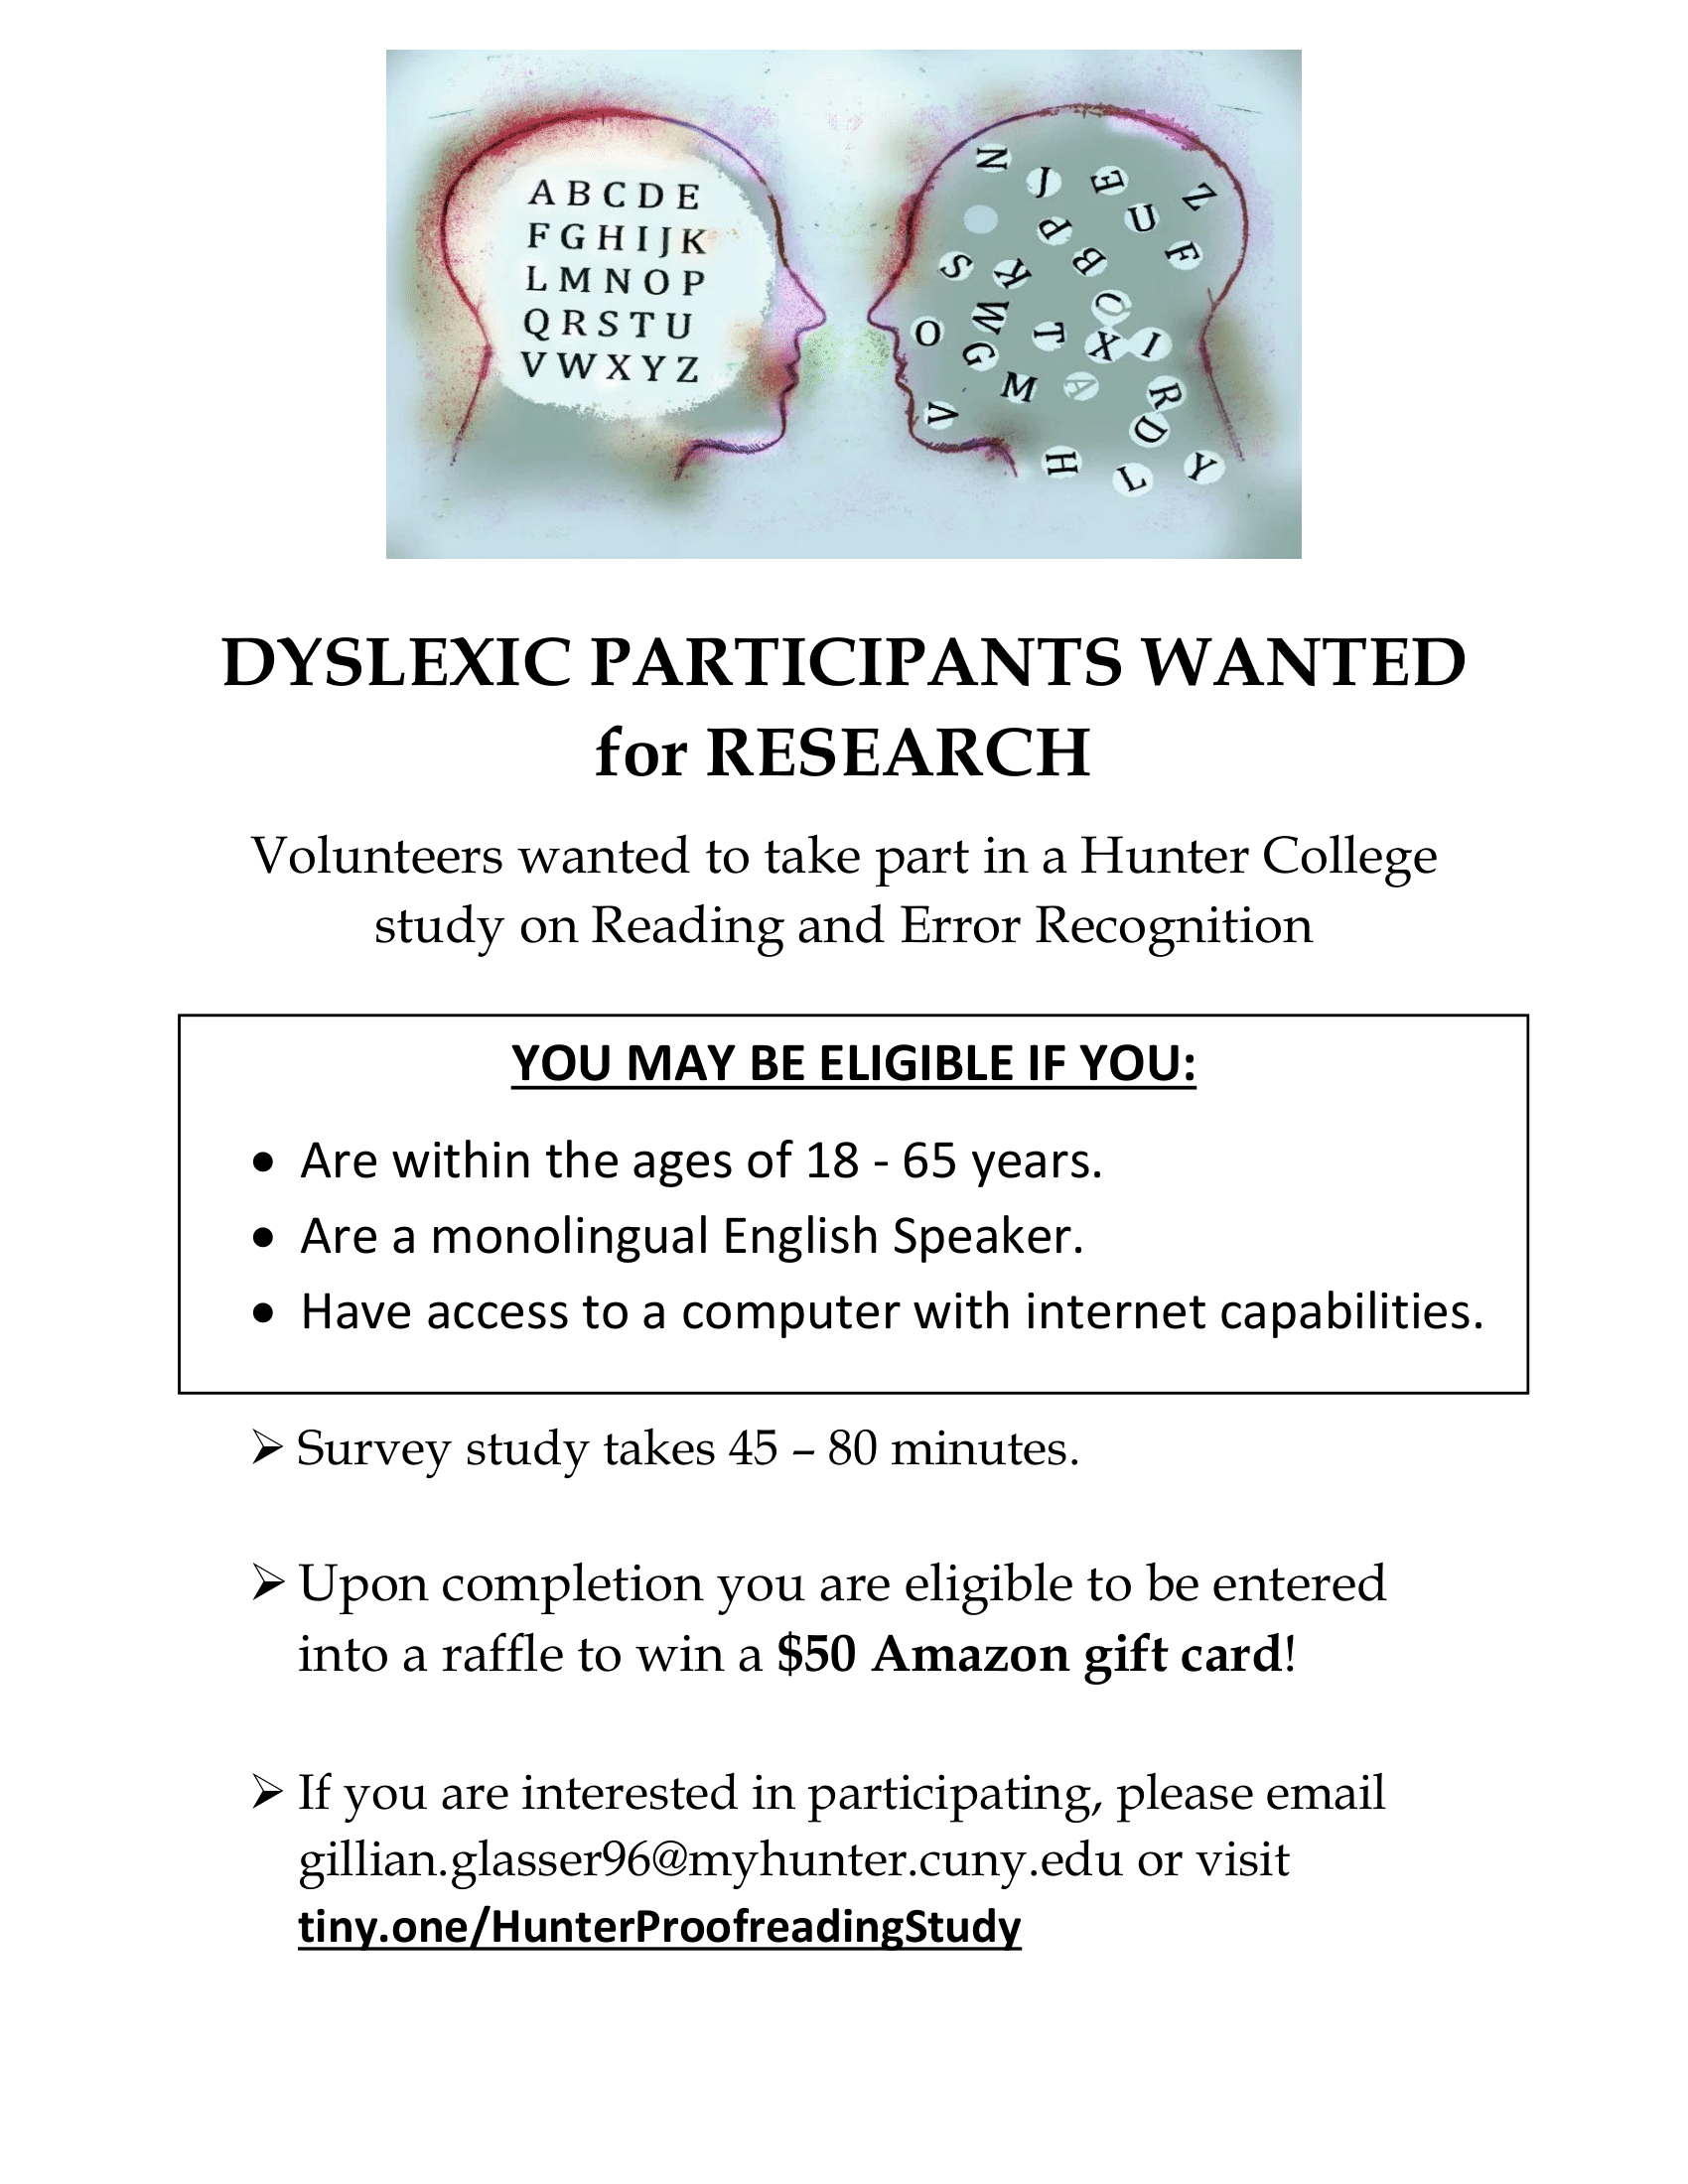 dyslexia research